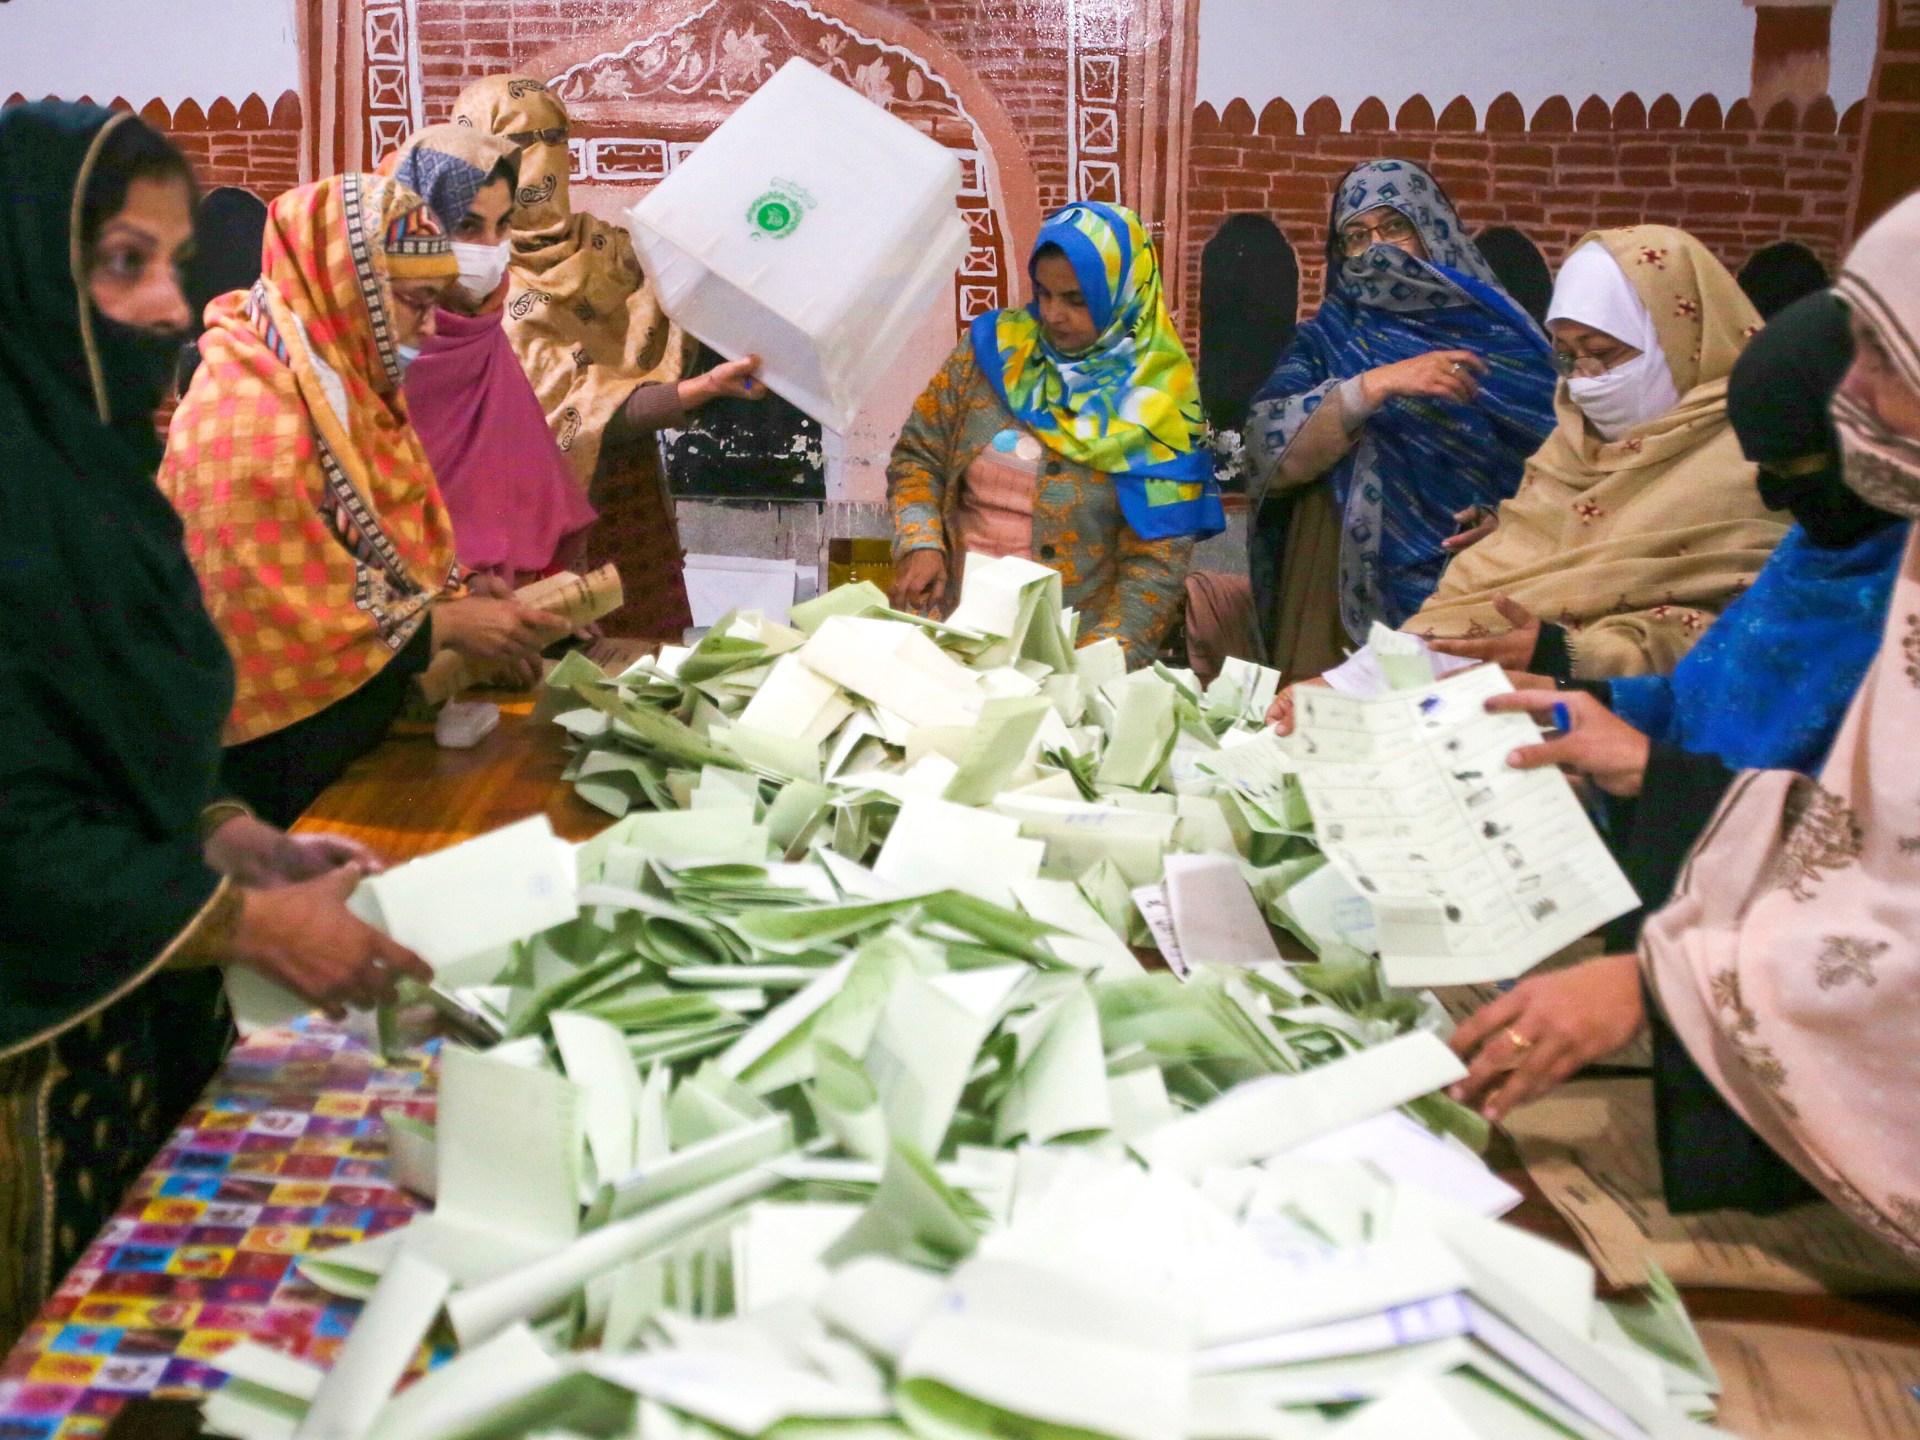 Khan i Sharif ogłaszają zwycięstwo w wyborach w Pakistanie, mimo że nie mają zdecydowanej większości |  Wiadomości wyborcze